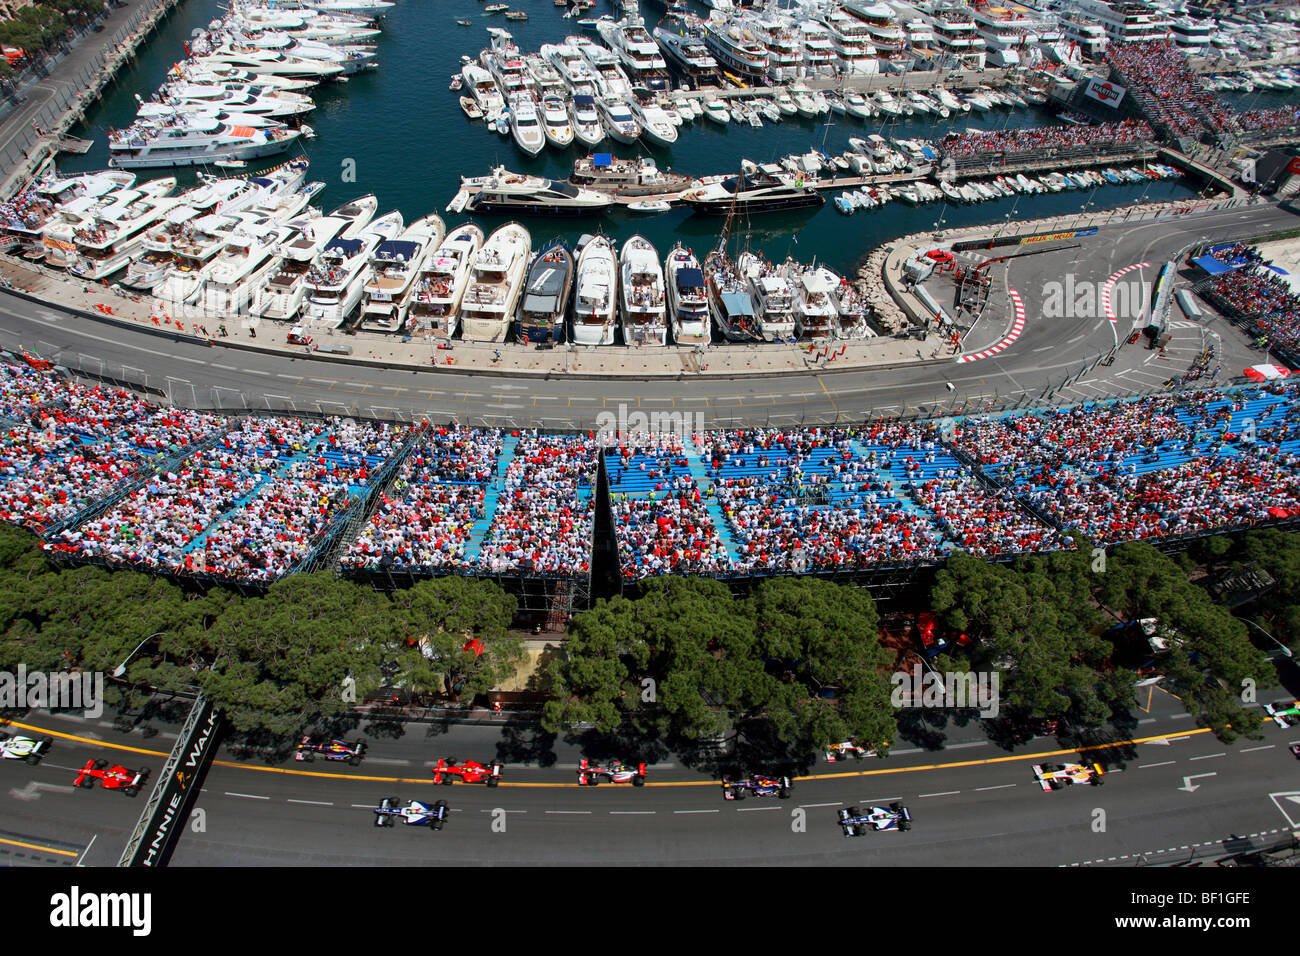 La foule du stade et la marina pendant le Grand Prix de Formule 1 de Monaco Banque D'Images